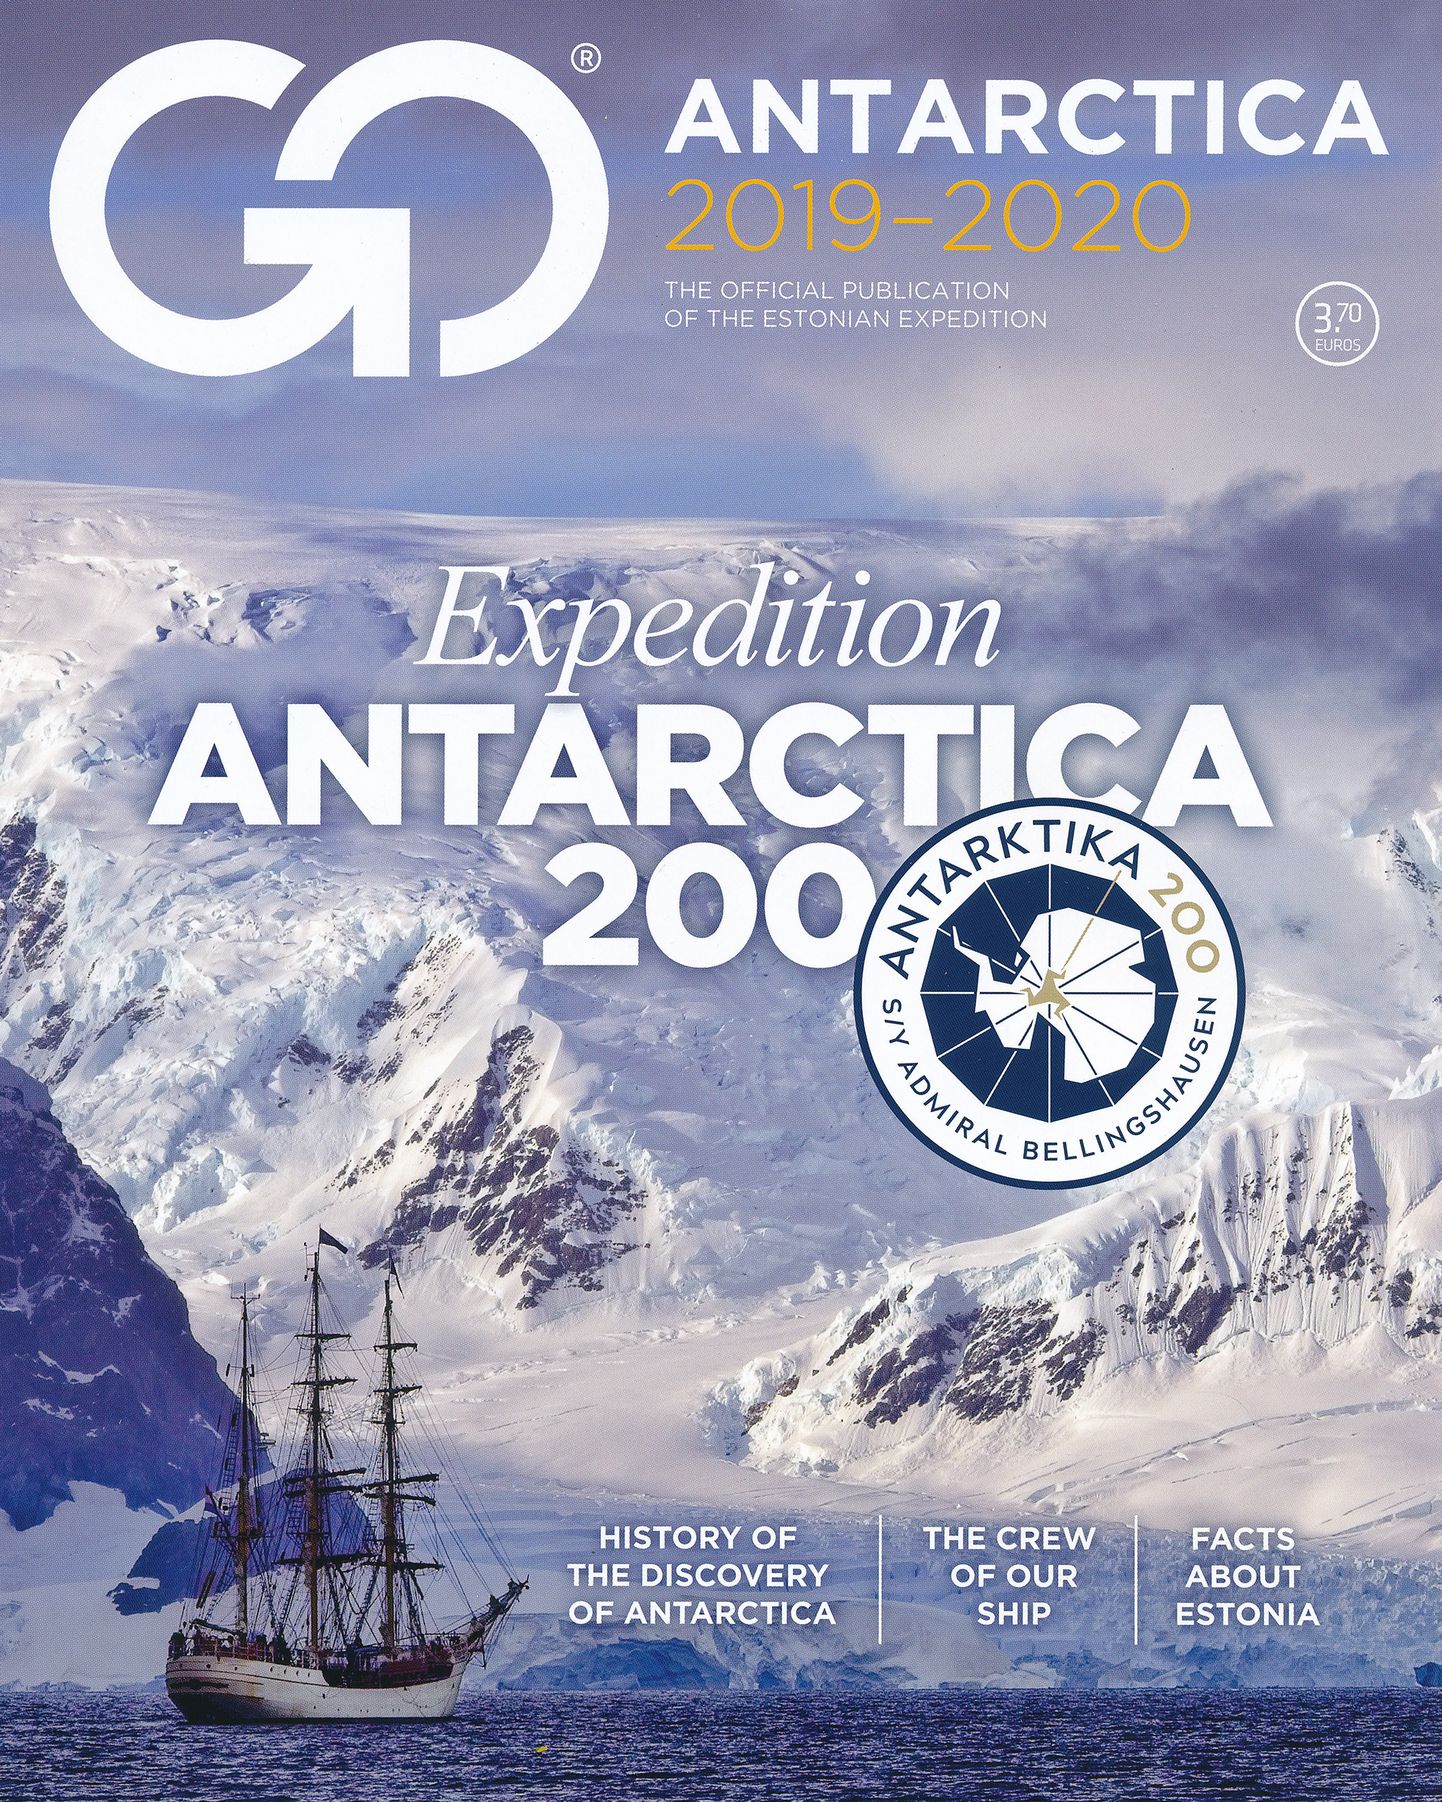 ANTARKTIKA 200: Trükis tutvustab Antarktikat, selle uurijaid, laeva Admiral Bellingshausen meeskonda ja reisiseltskonda.